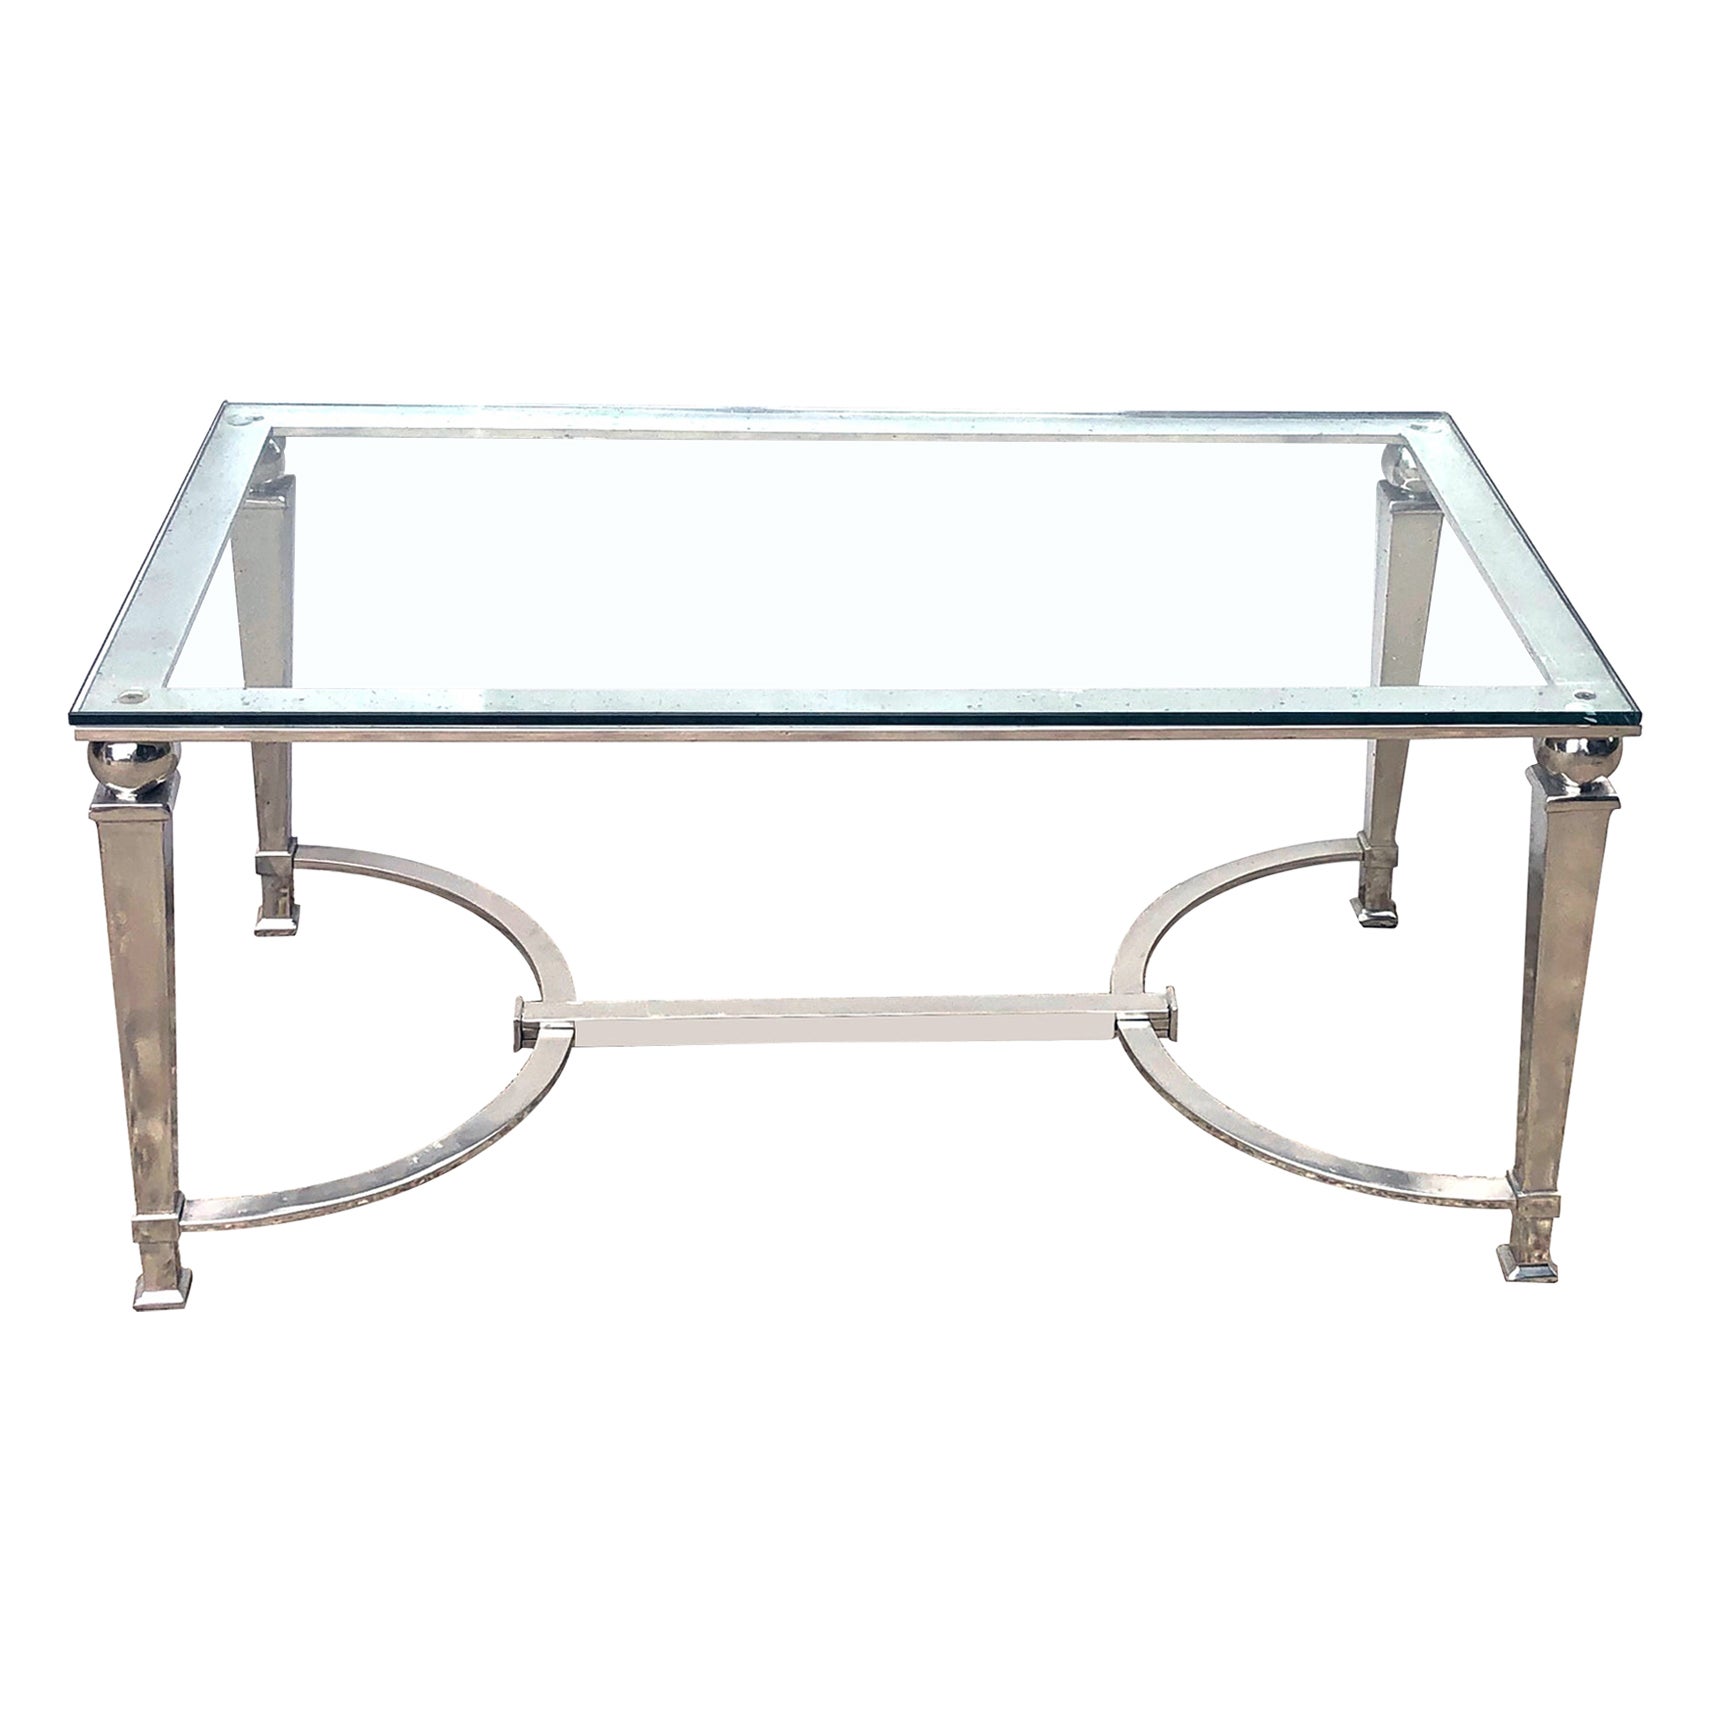 Table basse rectangulaire chromée de style néoclassique français avec plateau en verre